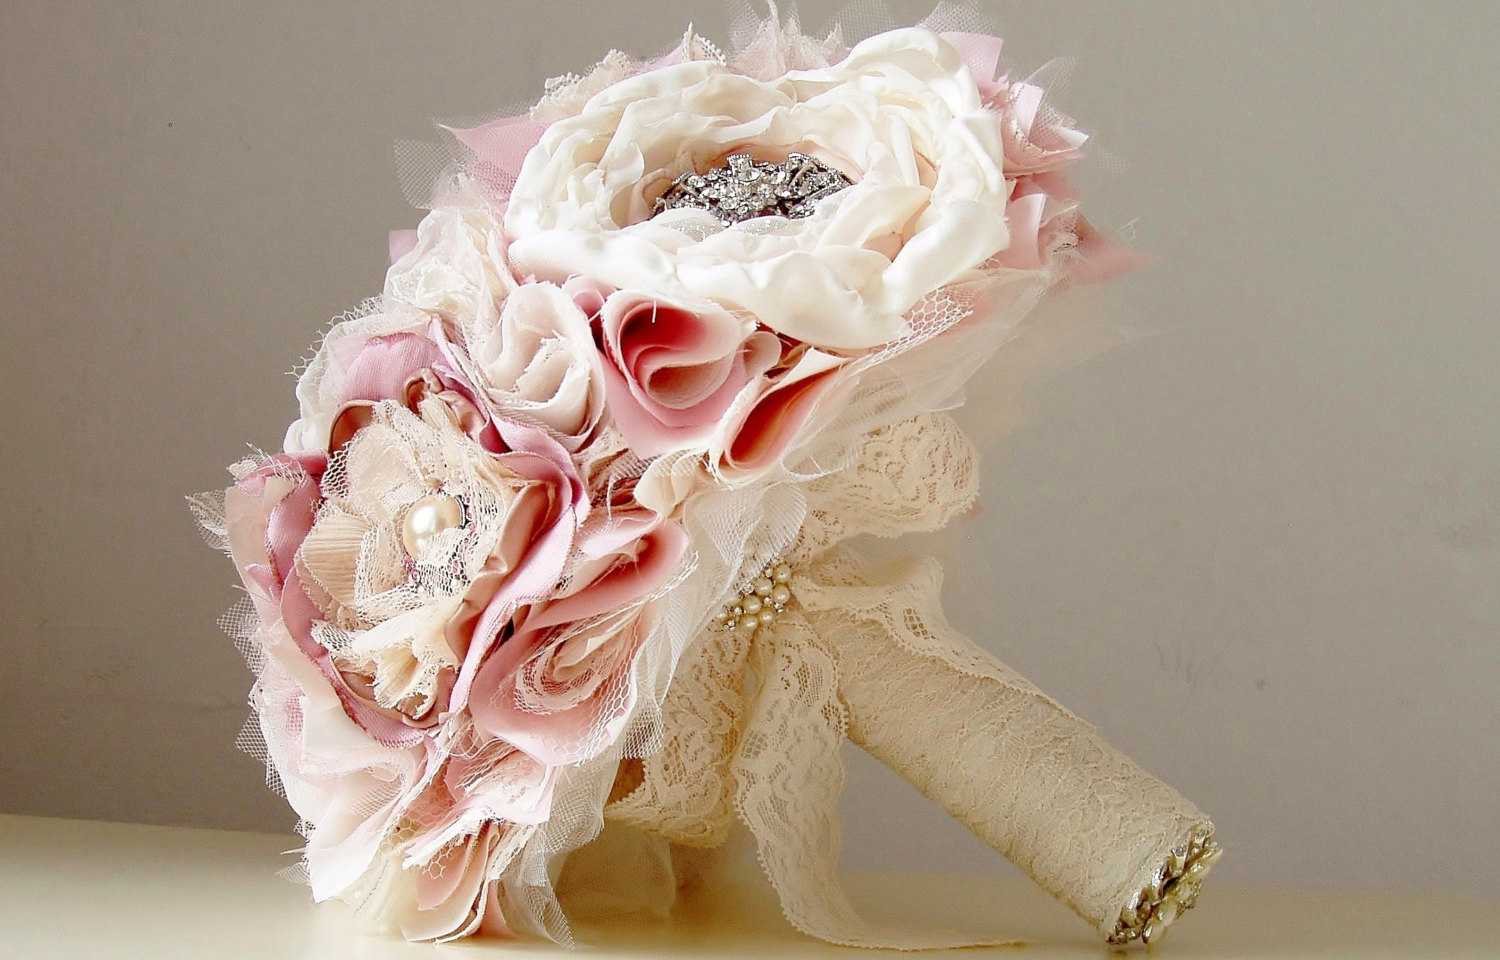 Пошаговая инструкция: как сделать букет невесты из ткани, лент и конфет?